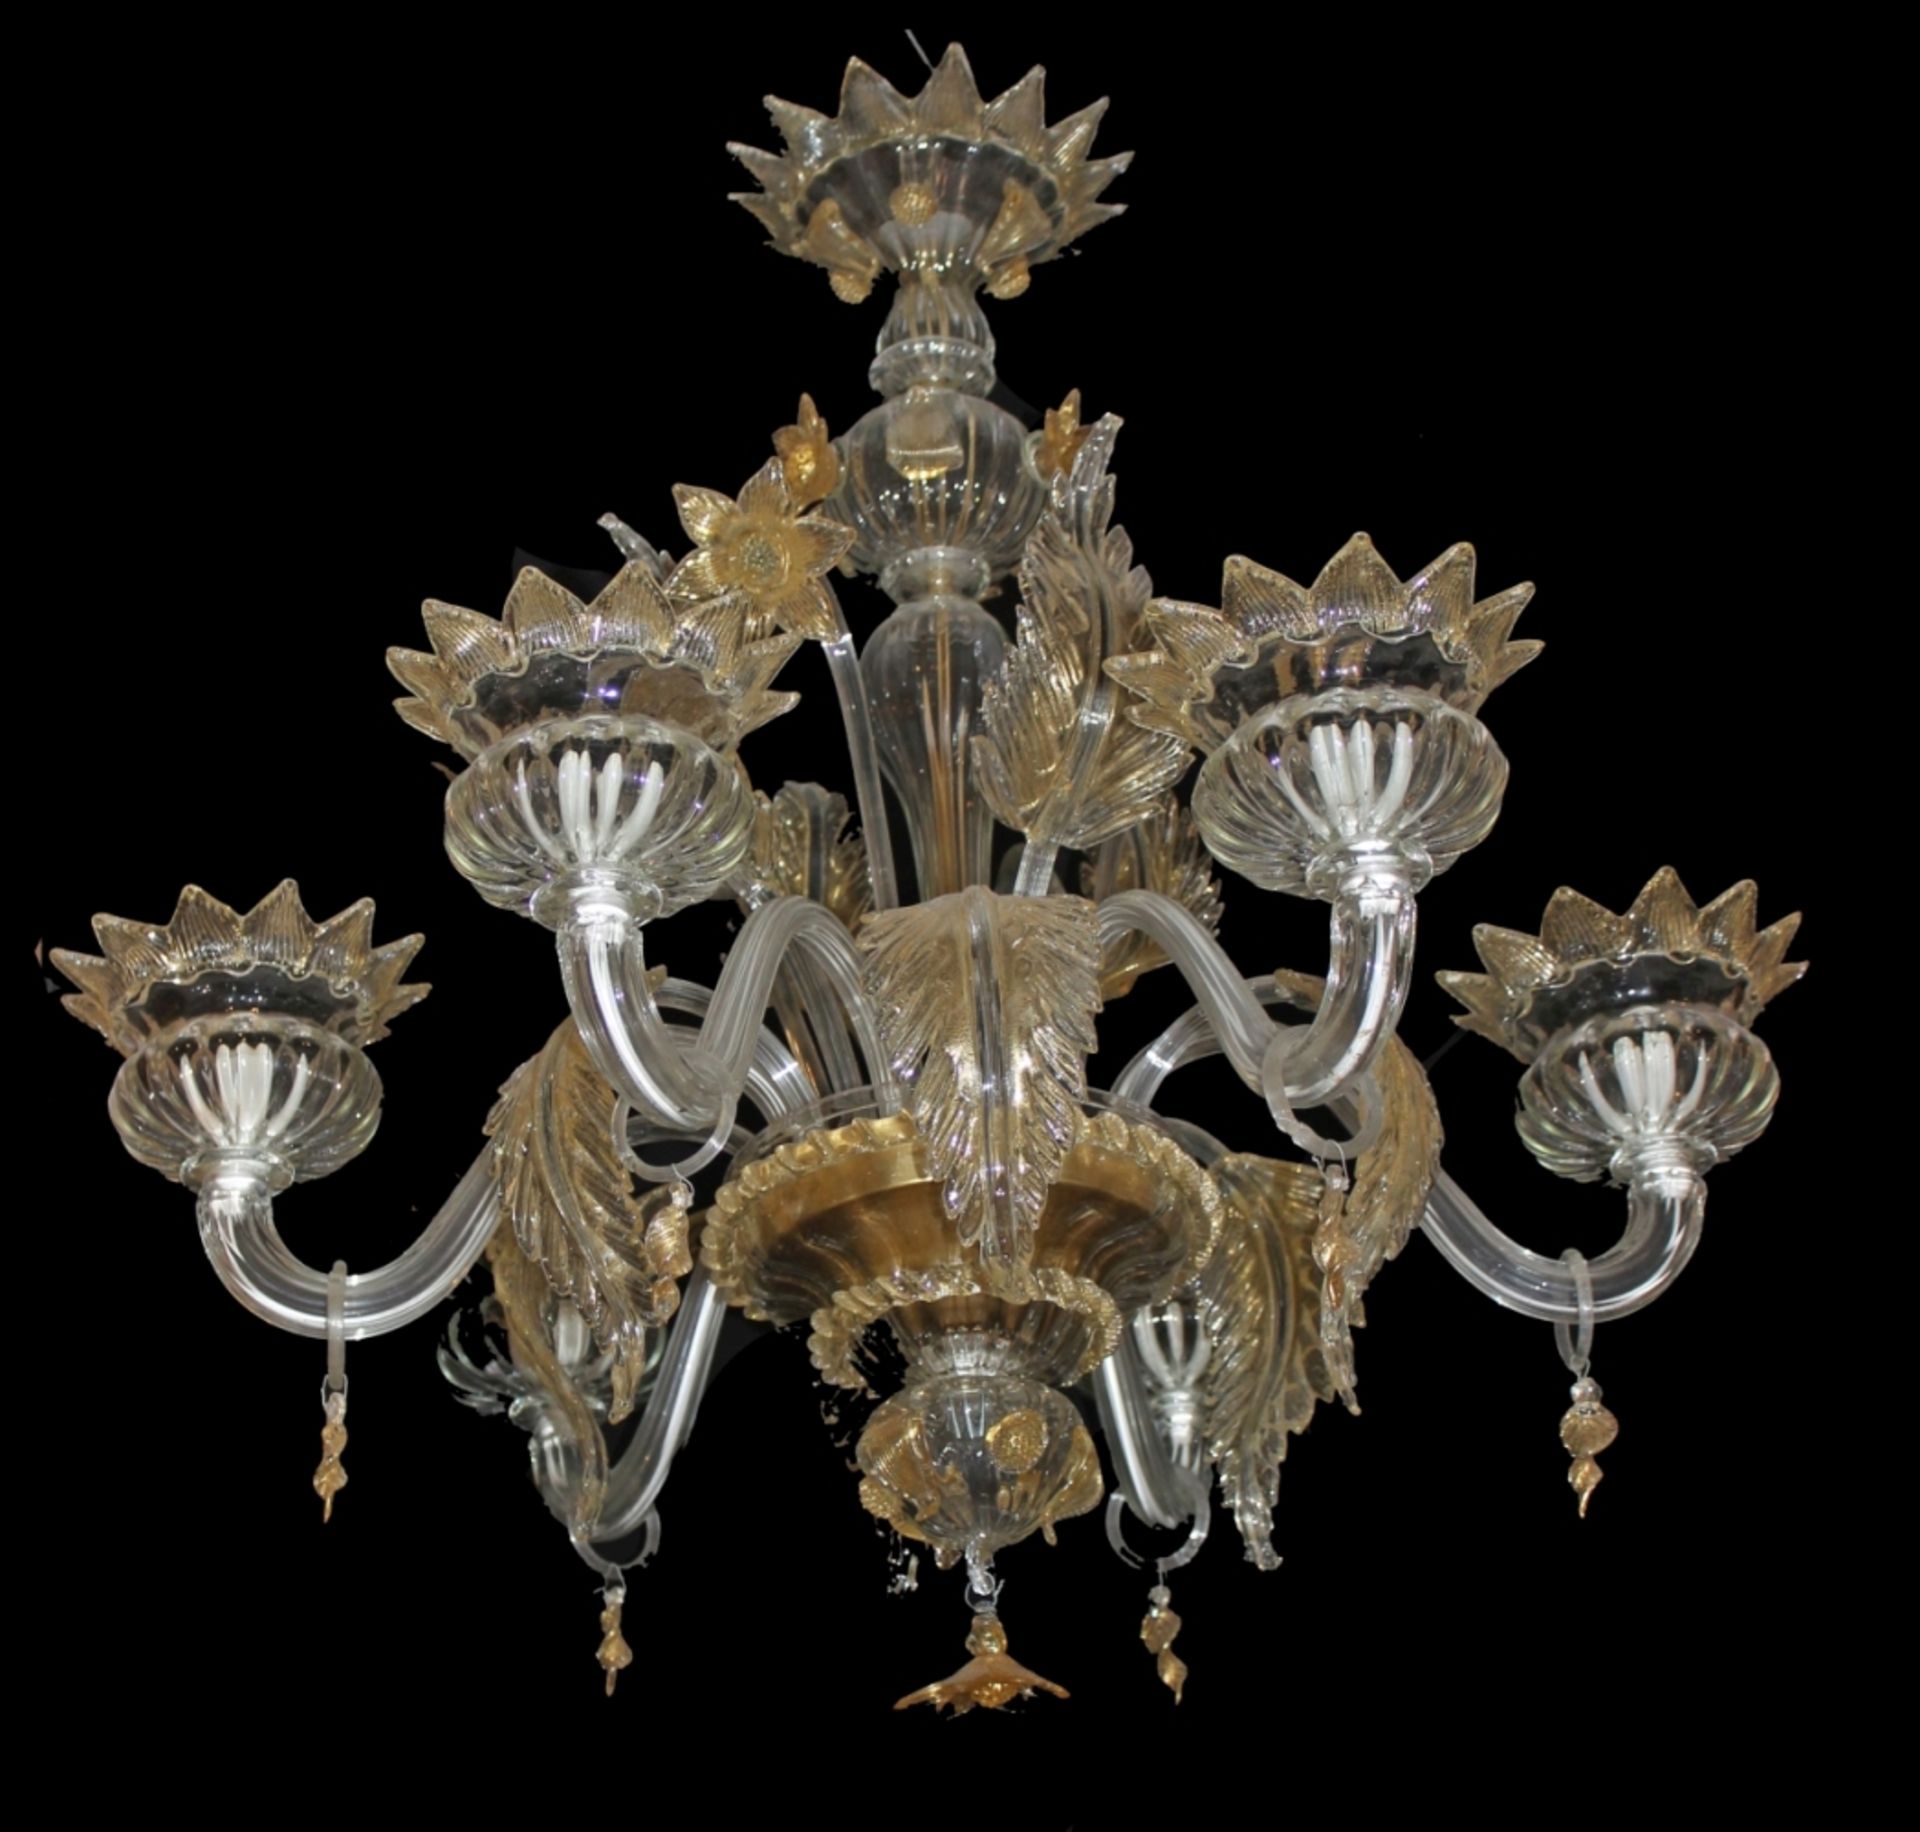 Lampe im klassischen venezianischen Stil Blumendekor, farbloses Glas und durch goldene Profile und